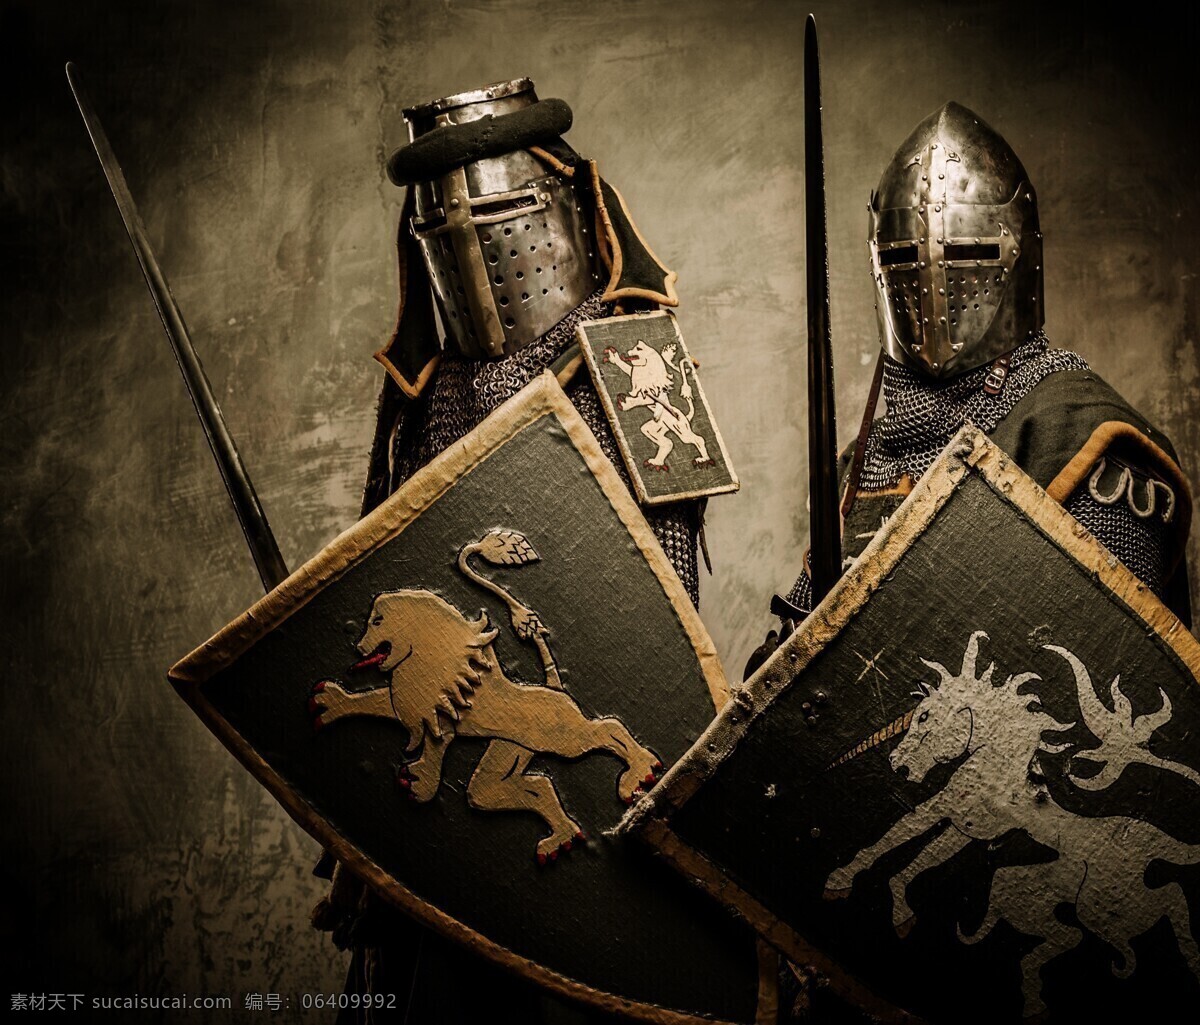 骑士 盔甲 古代骑士 皇家骑士 皇家战士 武士 战士 士兵 欧洲骑士 骑士团 外国骑士 古代战士 外国战士 中世纪骑士 文化艺术 传统文化